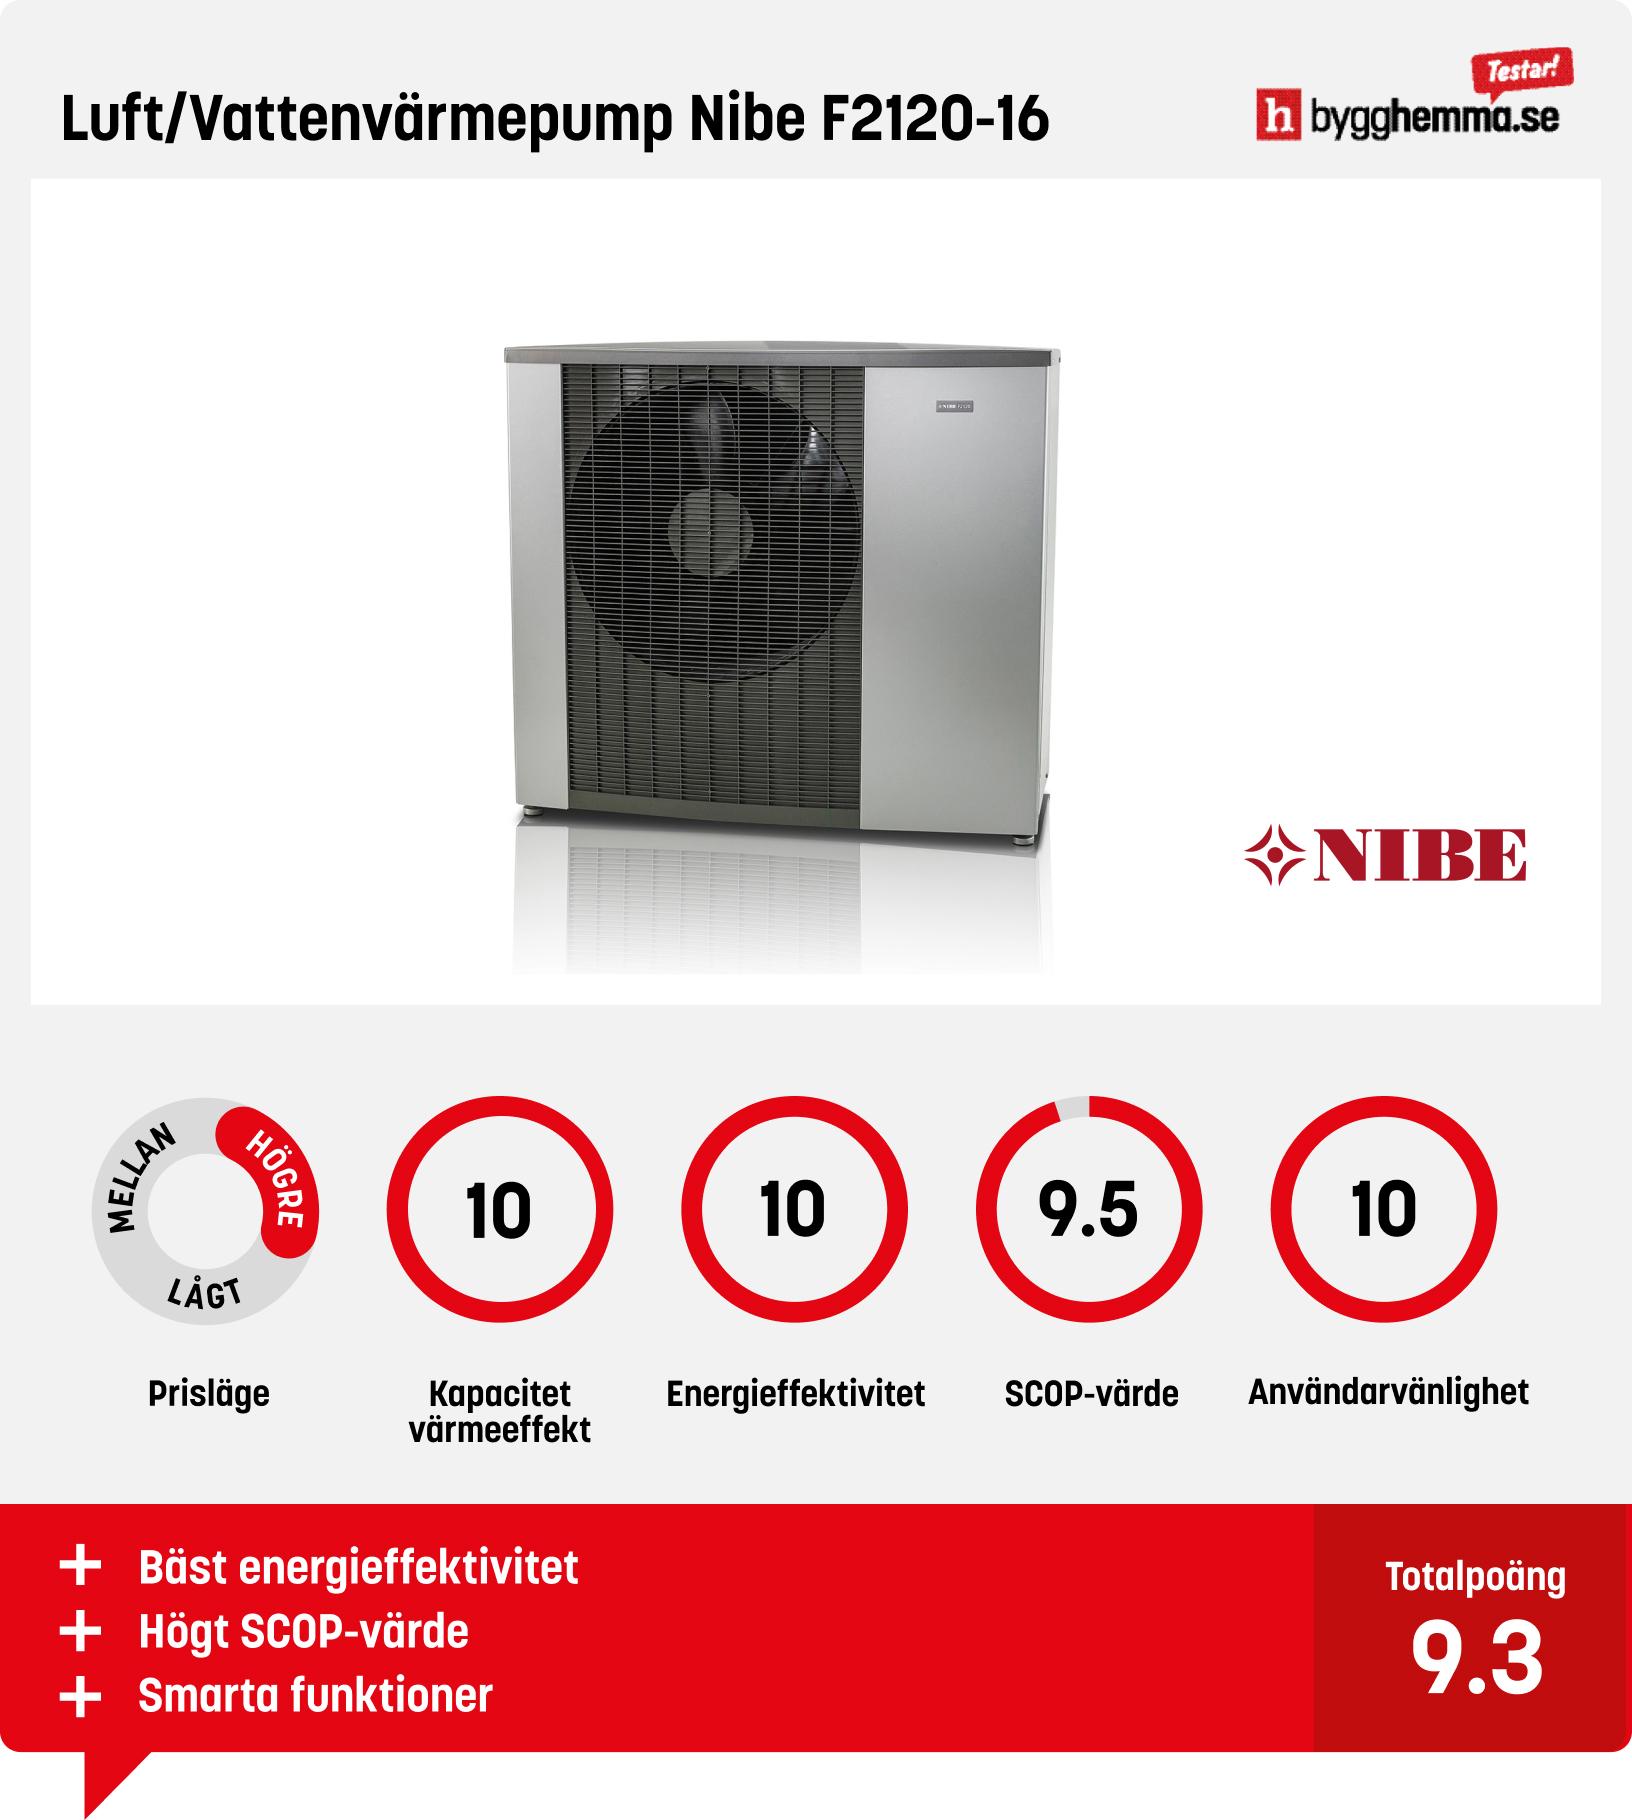 Luft vatten värmepump test - Luft/Vattenvärmepump Nibe F2120-16